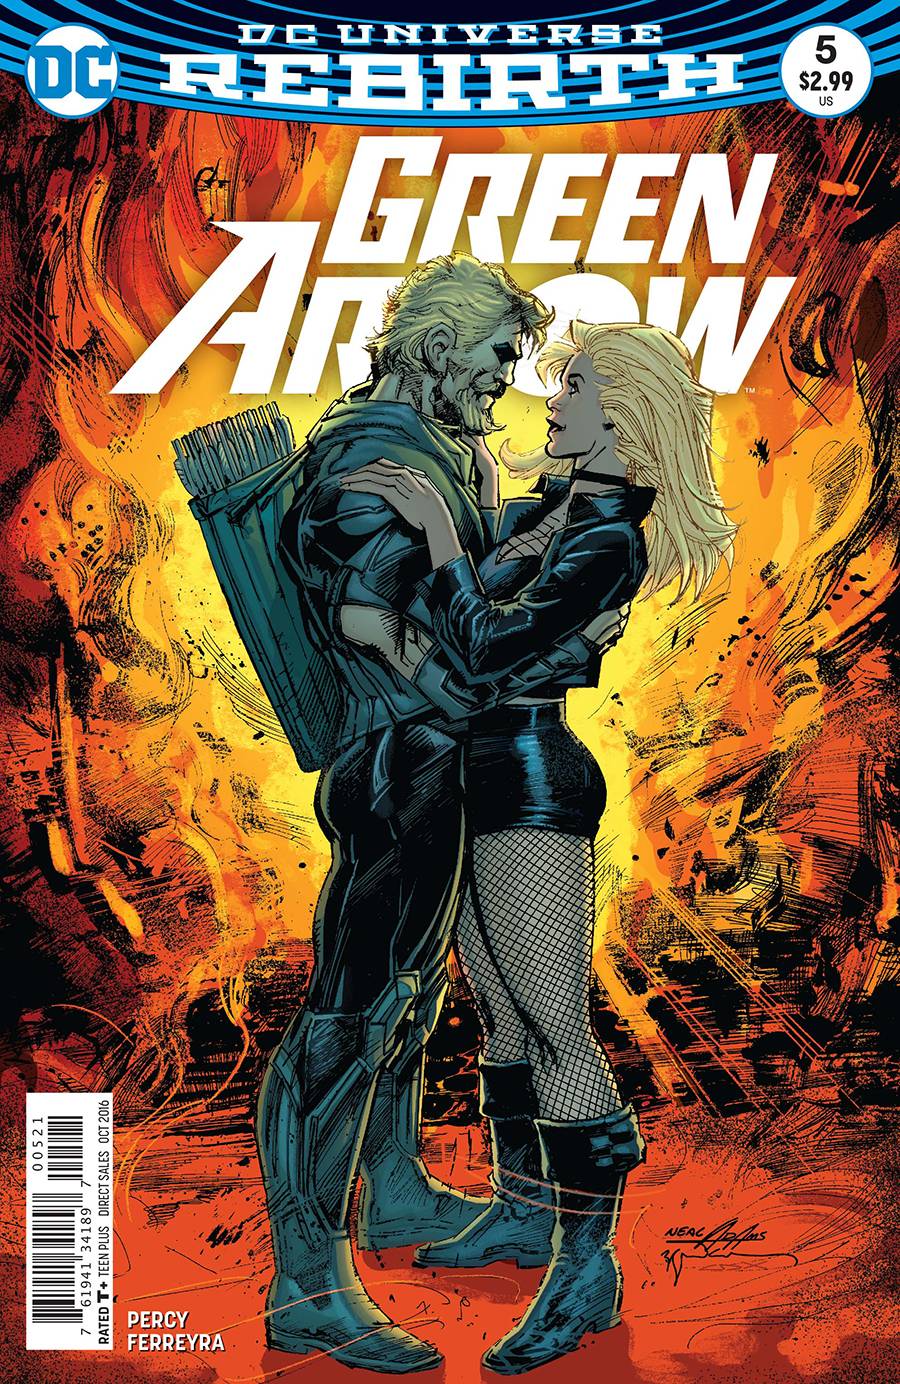 Green Arrow #5 Variant Edition (2016)